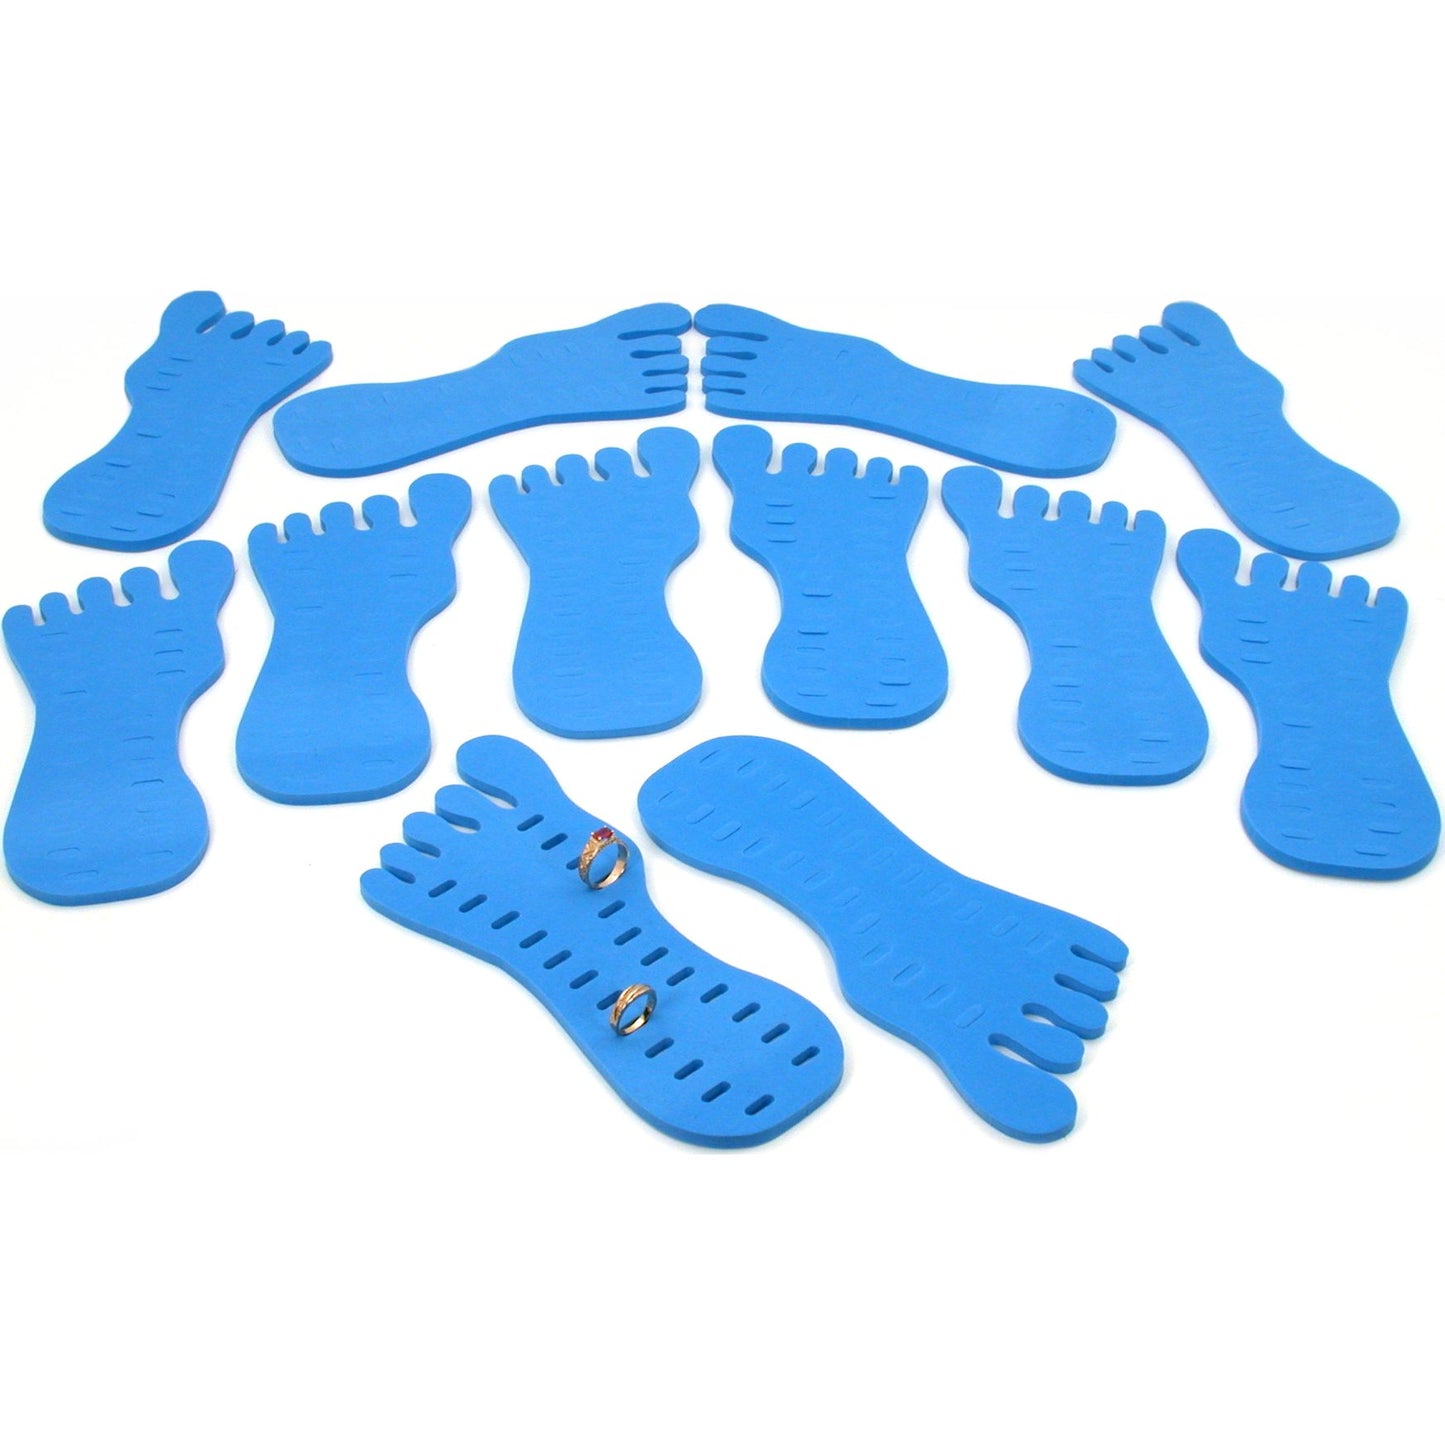 12 Toe Ring Foot Foam Display Body Jewelry Case Blue